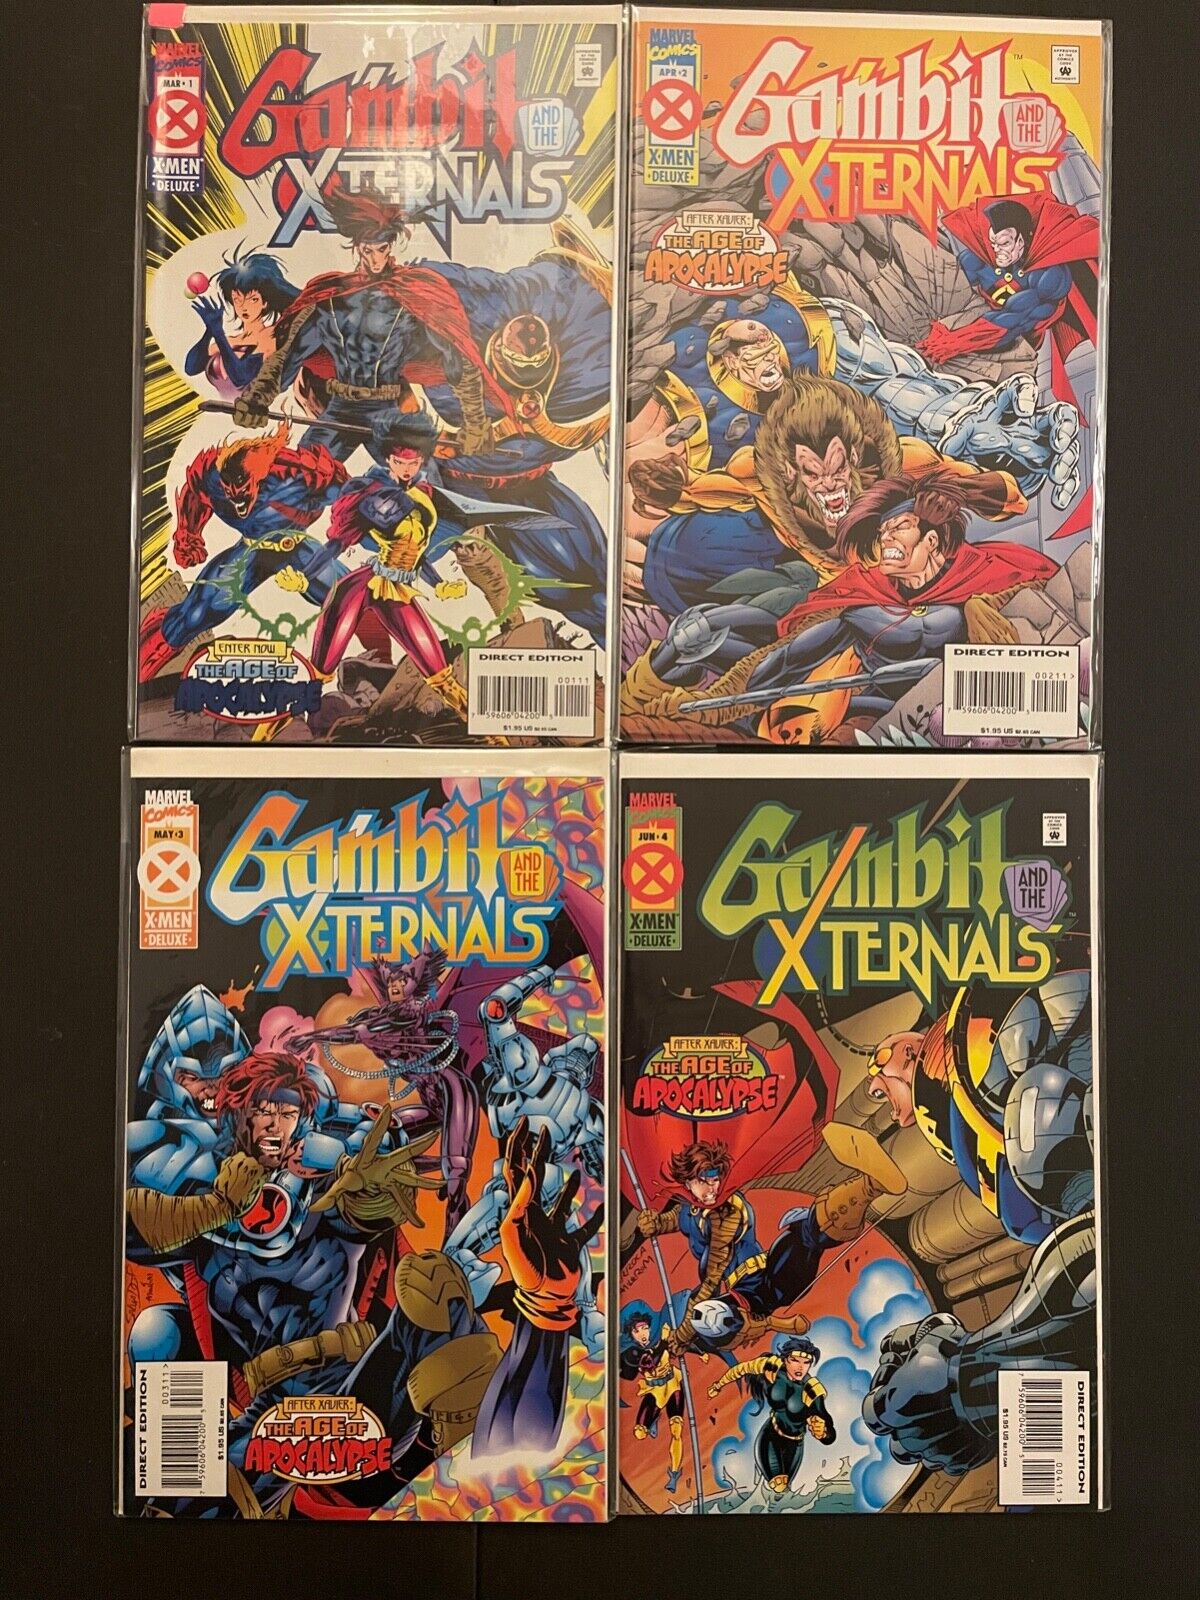 Gambit and the Xternals 1-4 High Grade 9.4 Marvel Lot Set Run D89-138